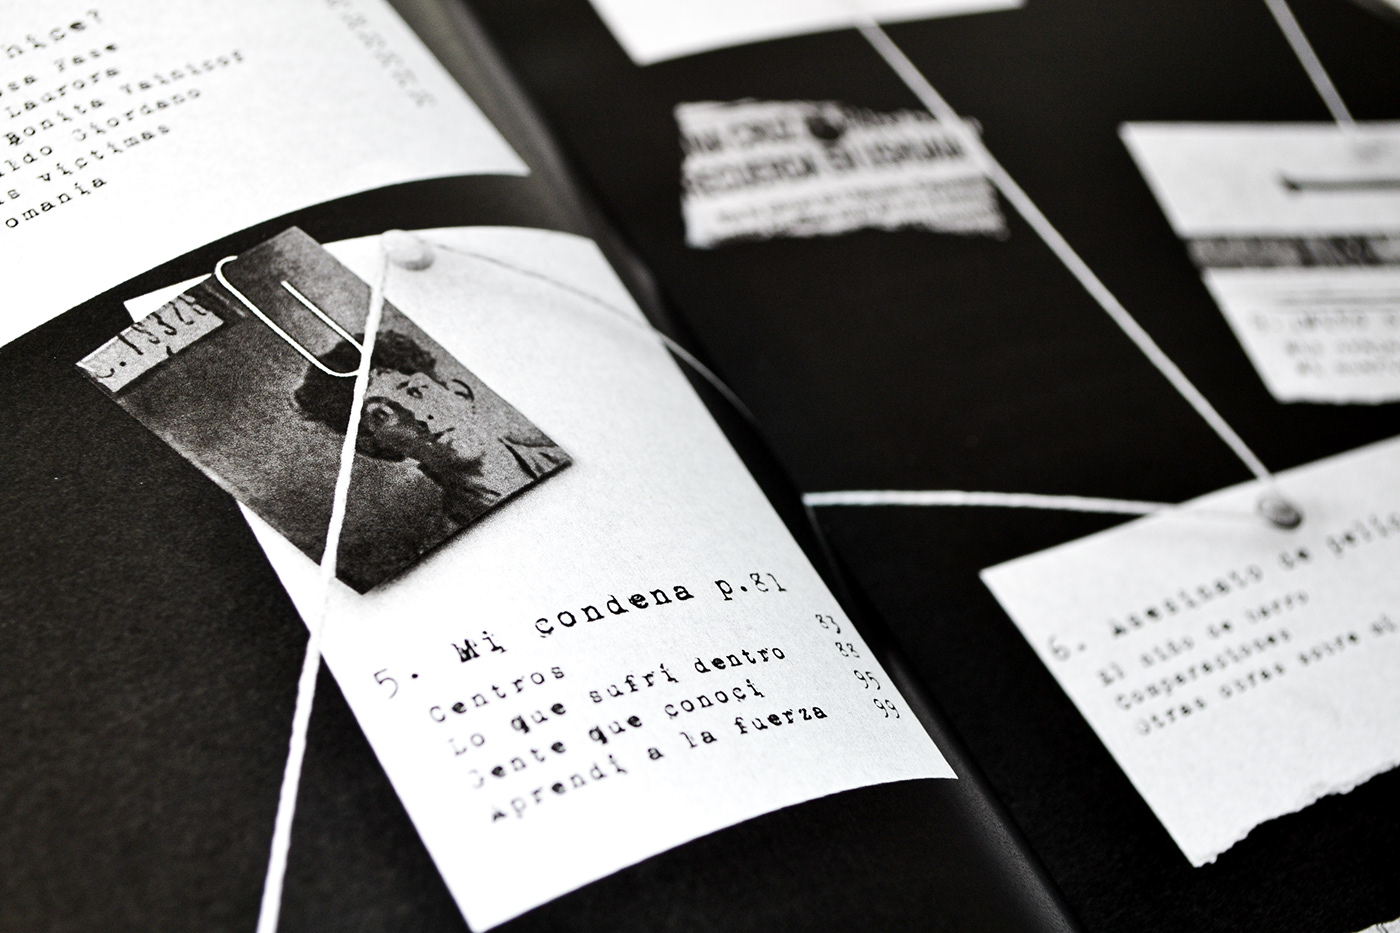 coleccion de libros Diseño editorial diseño gráfico uade